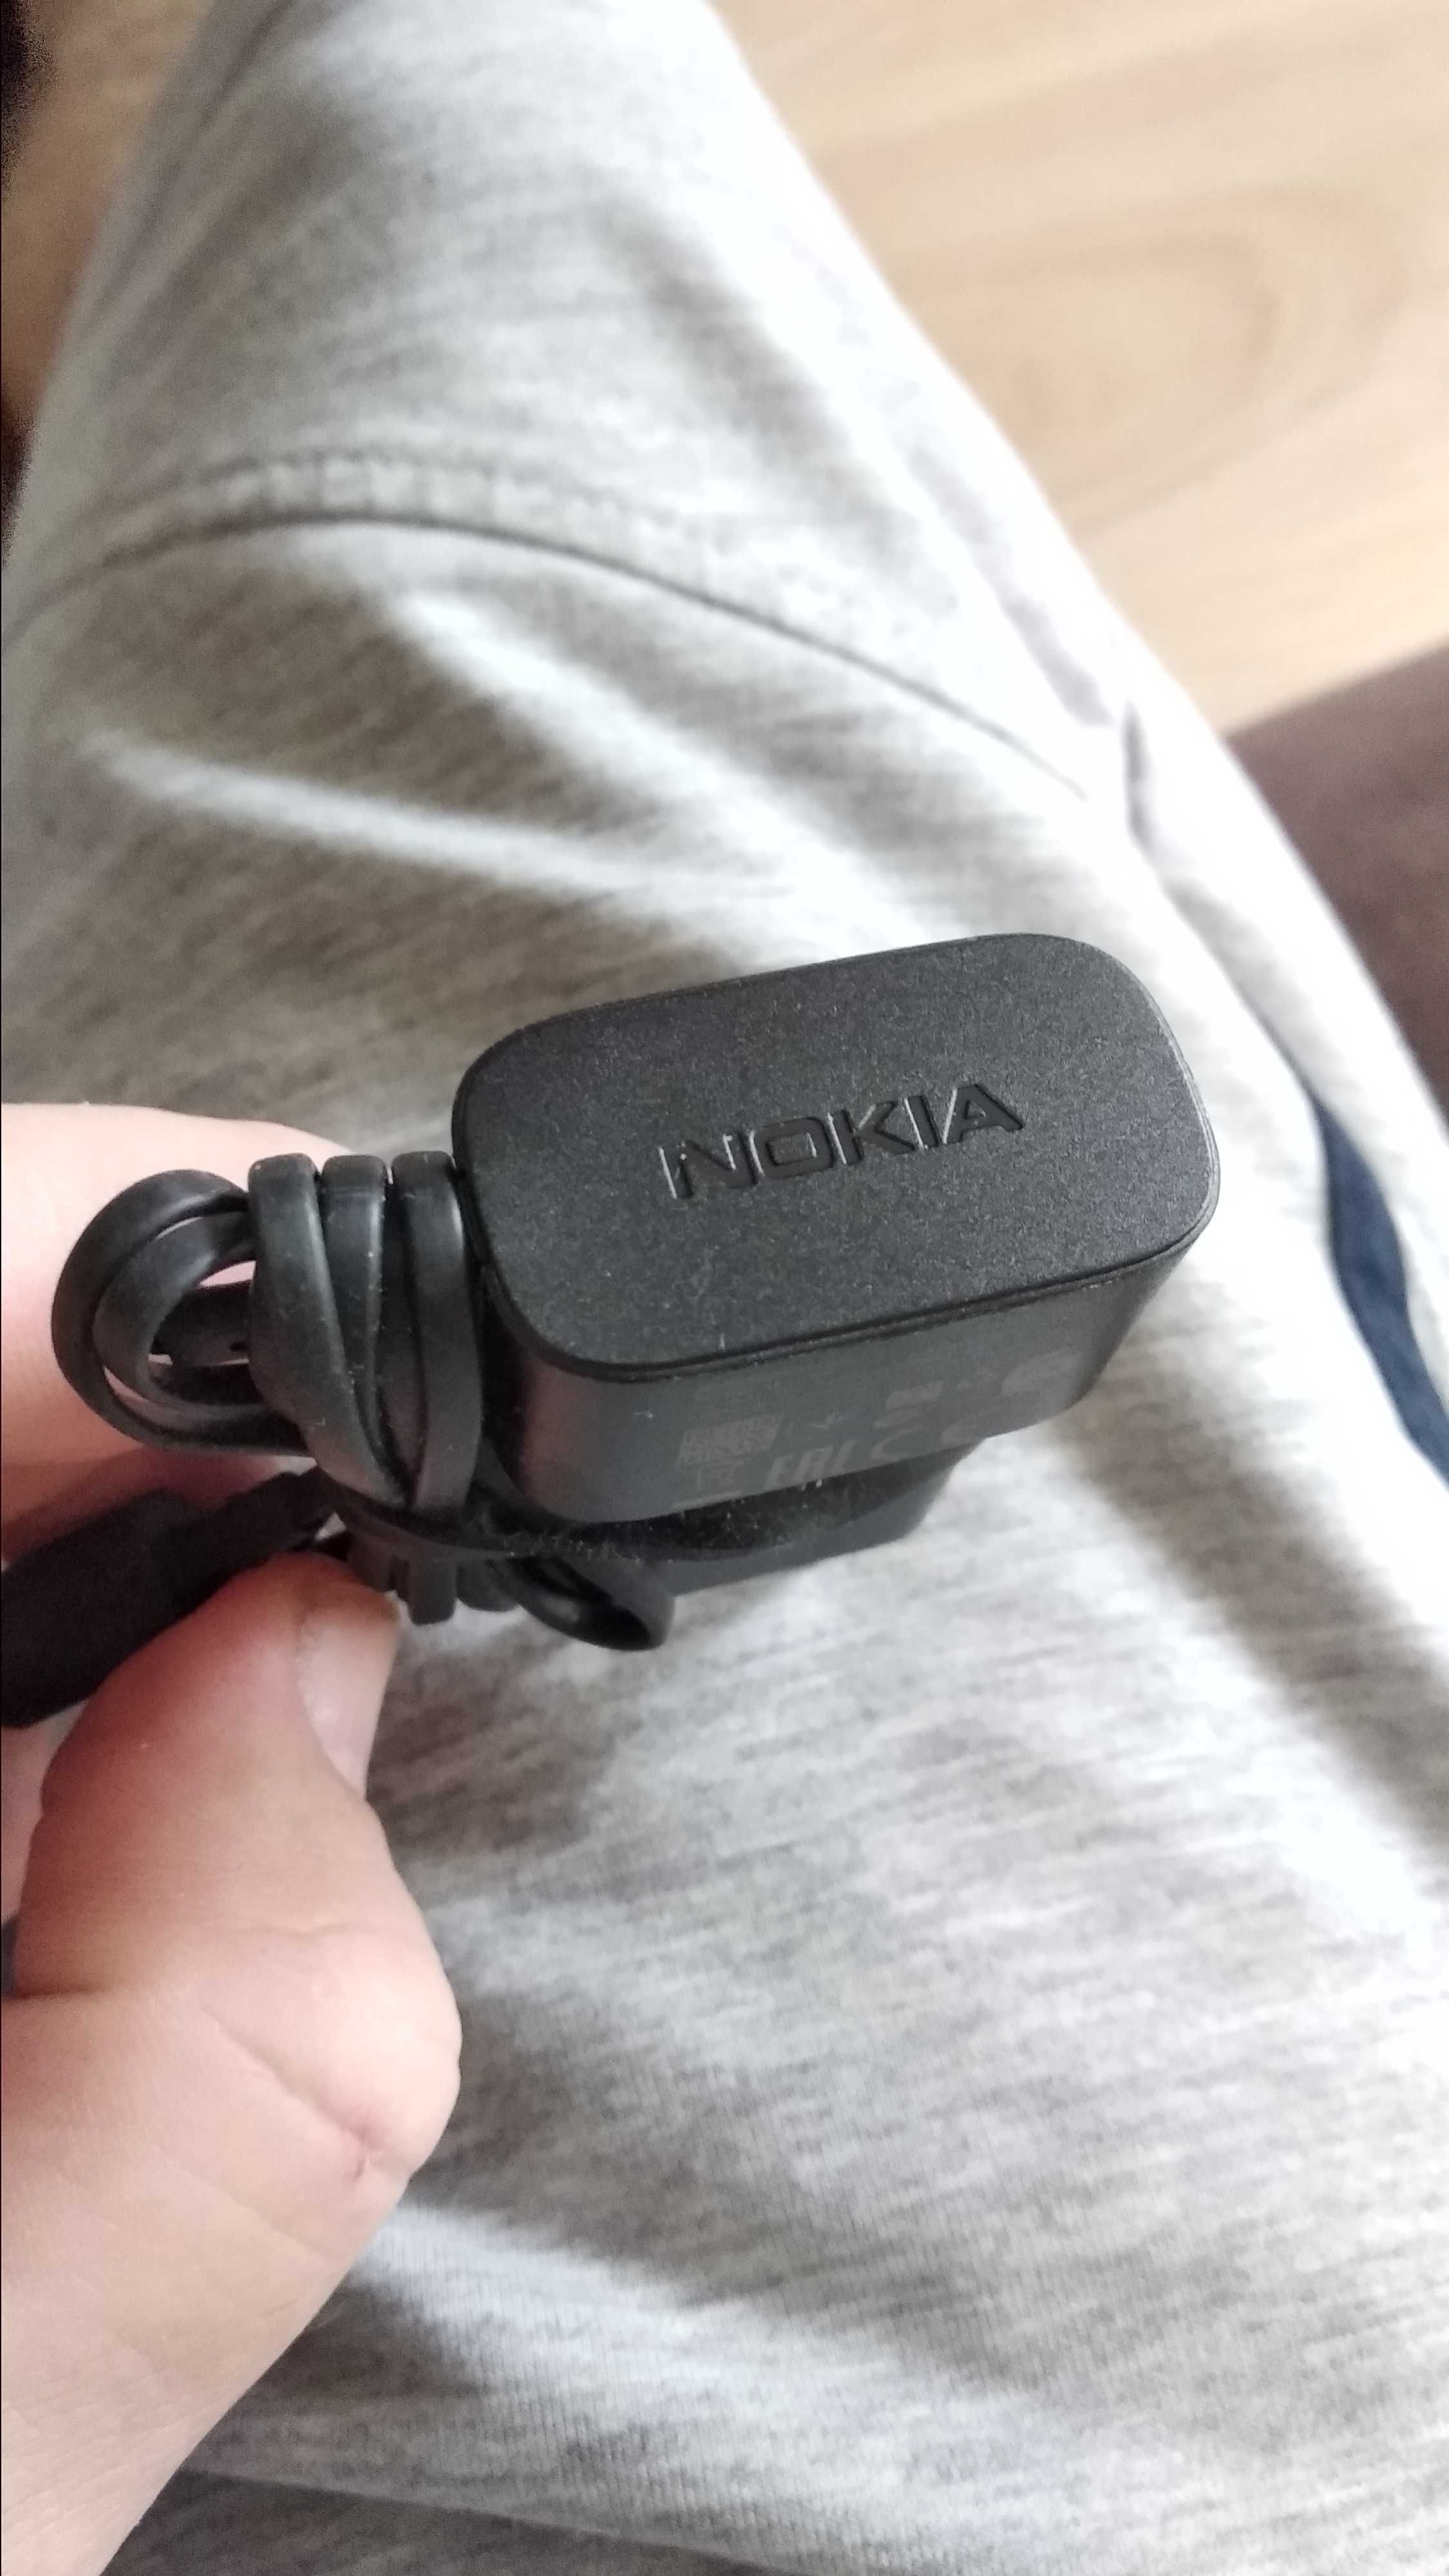 Ładowarka micro usb Nokia
Nieużywana